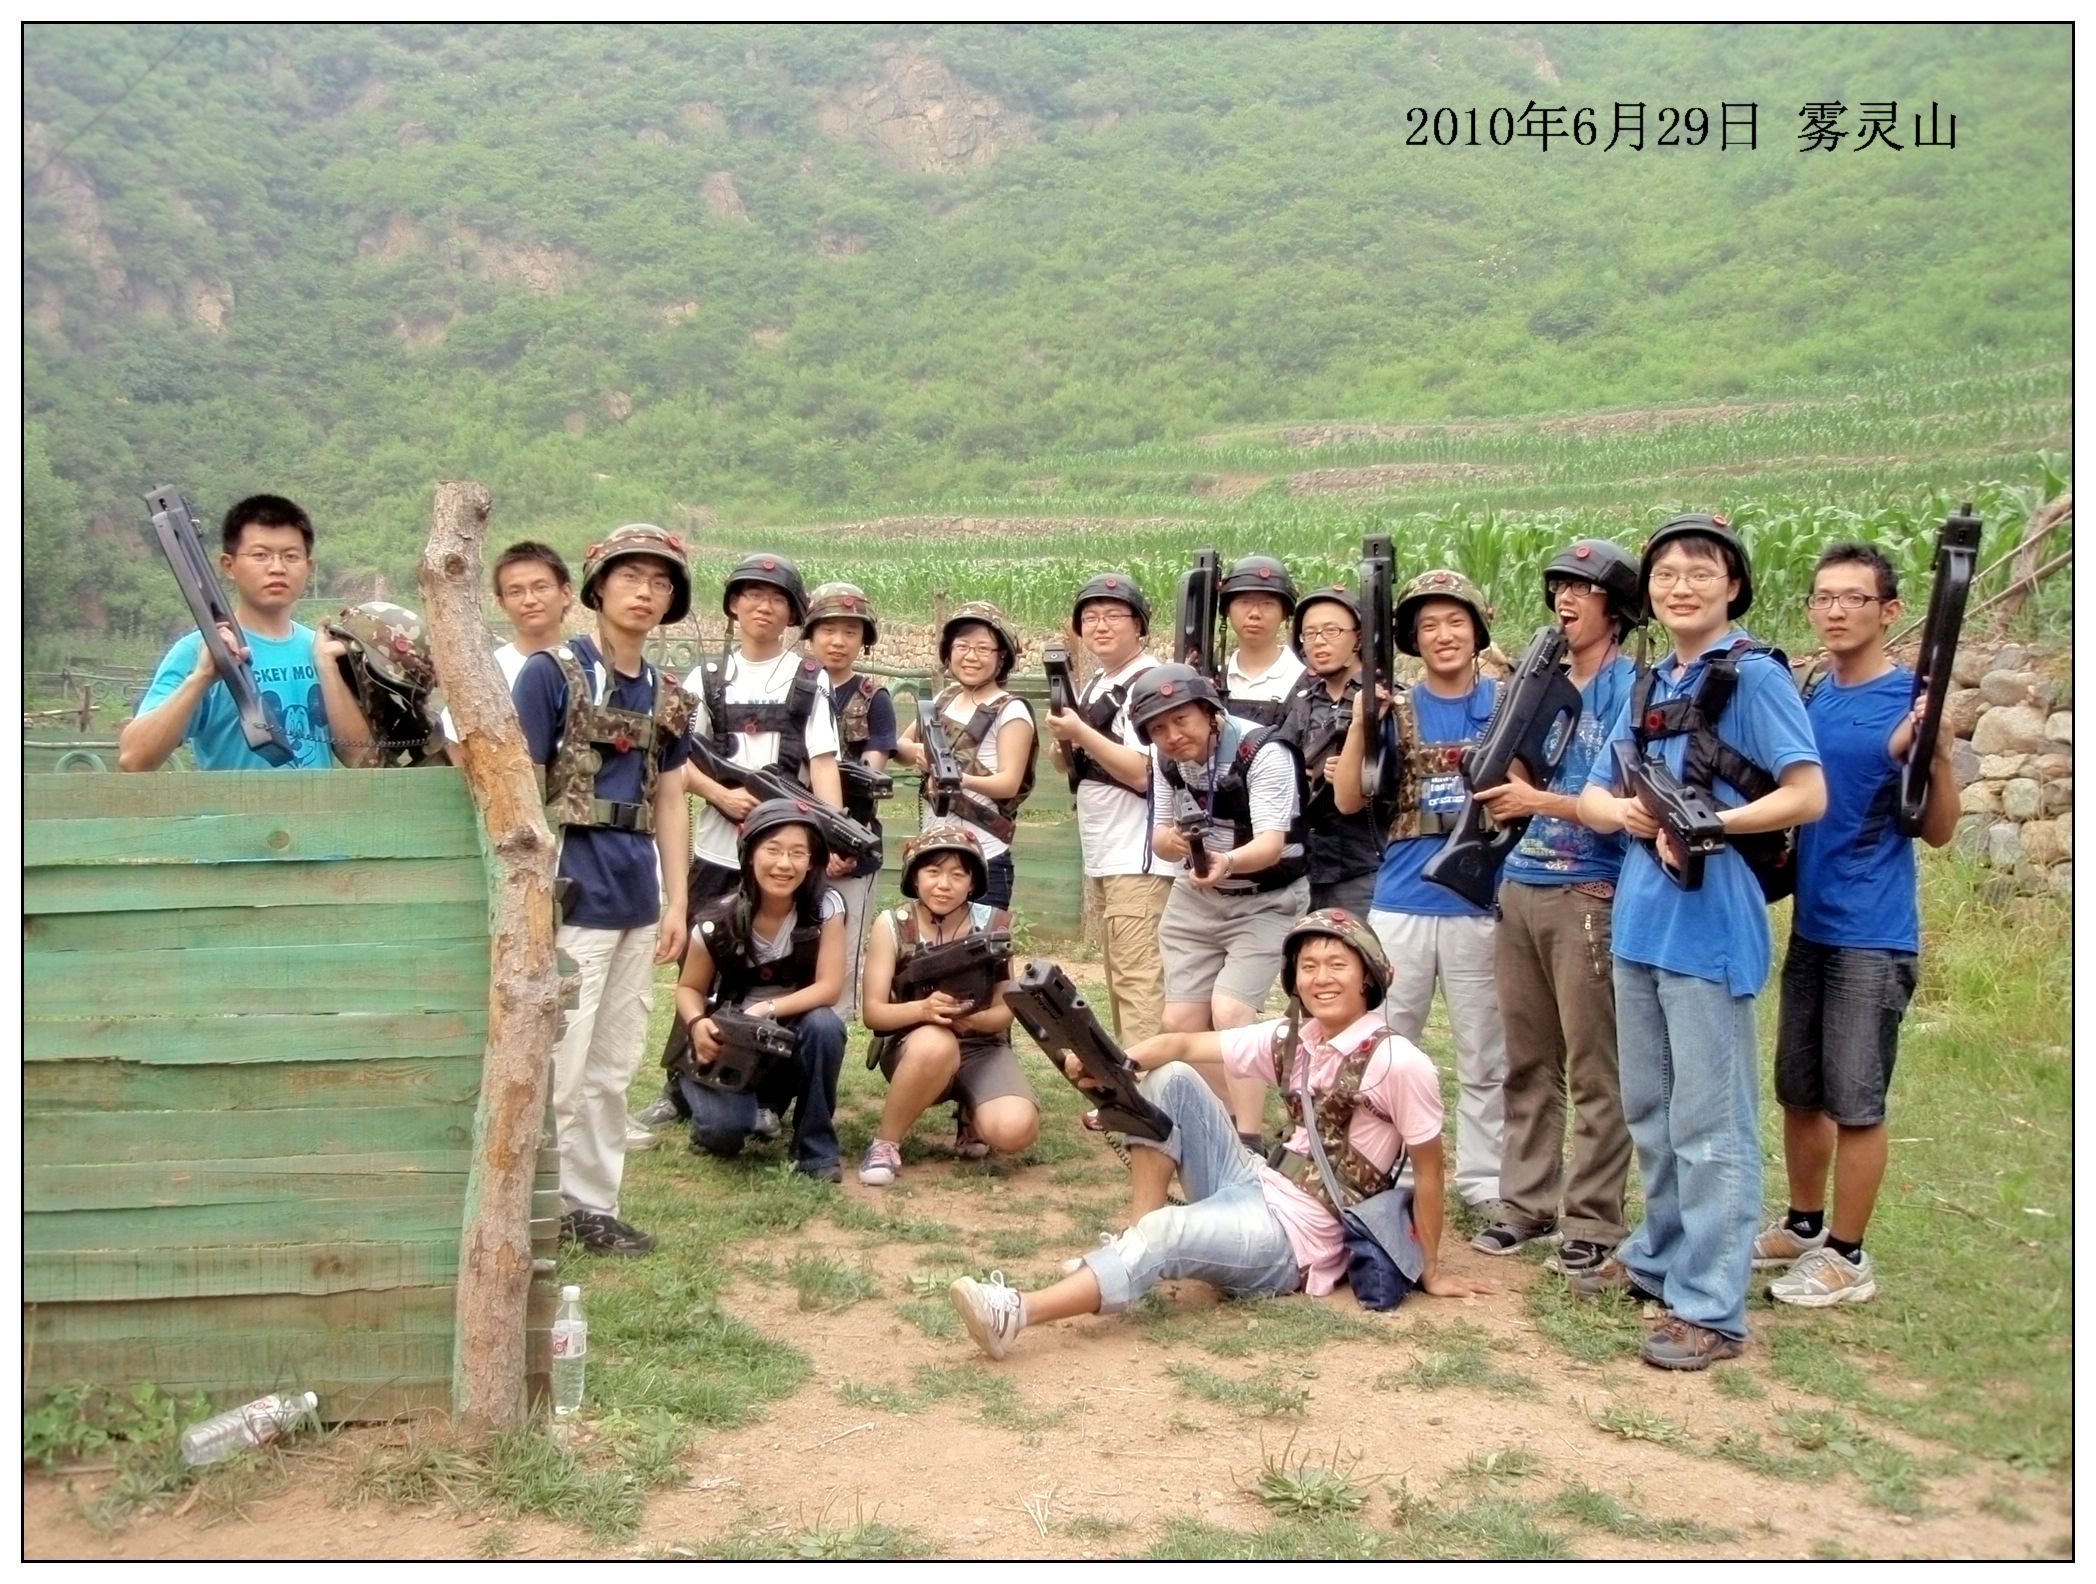 2010 Graduation trip-Wuling Mountain